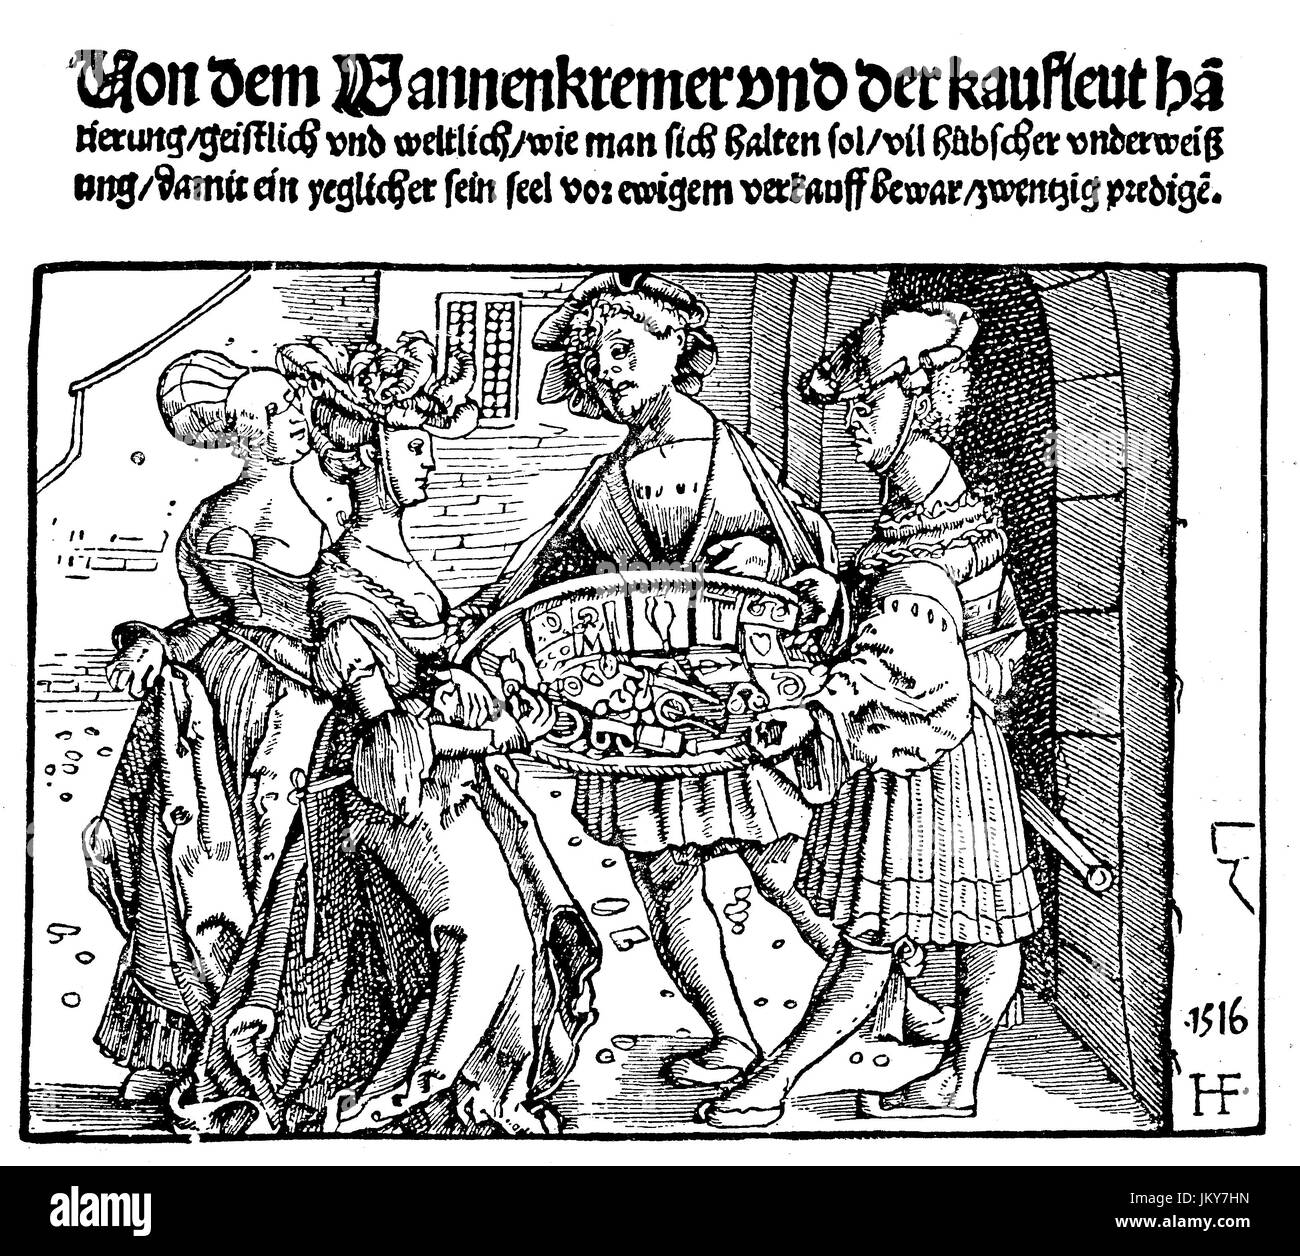 Digital verbessert:, Kostüme, Frauen prüfen die Ware der Hausierer, Kaufleute, Holzschnitt von 1516, Veröffentlichung aus dem Jahr 1882 Stockfoto